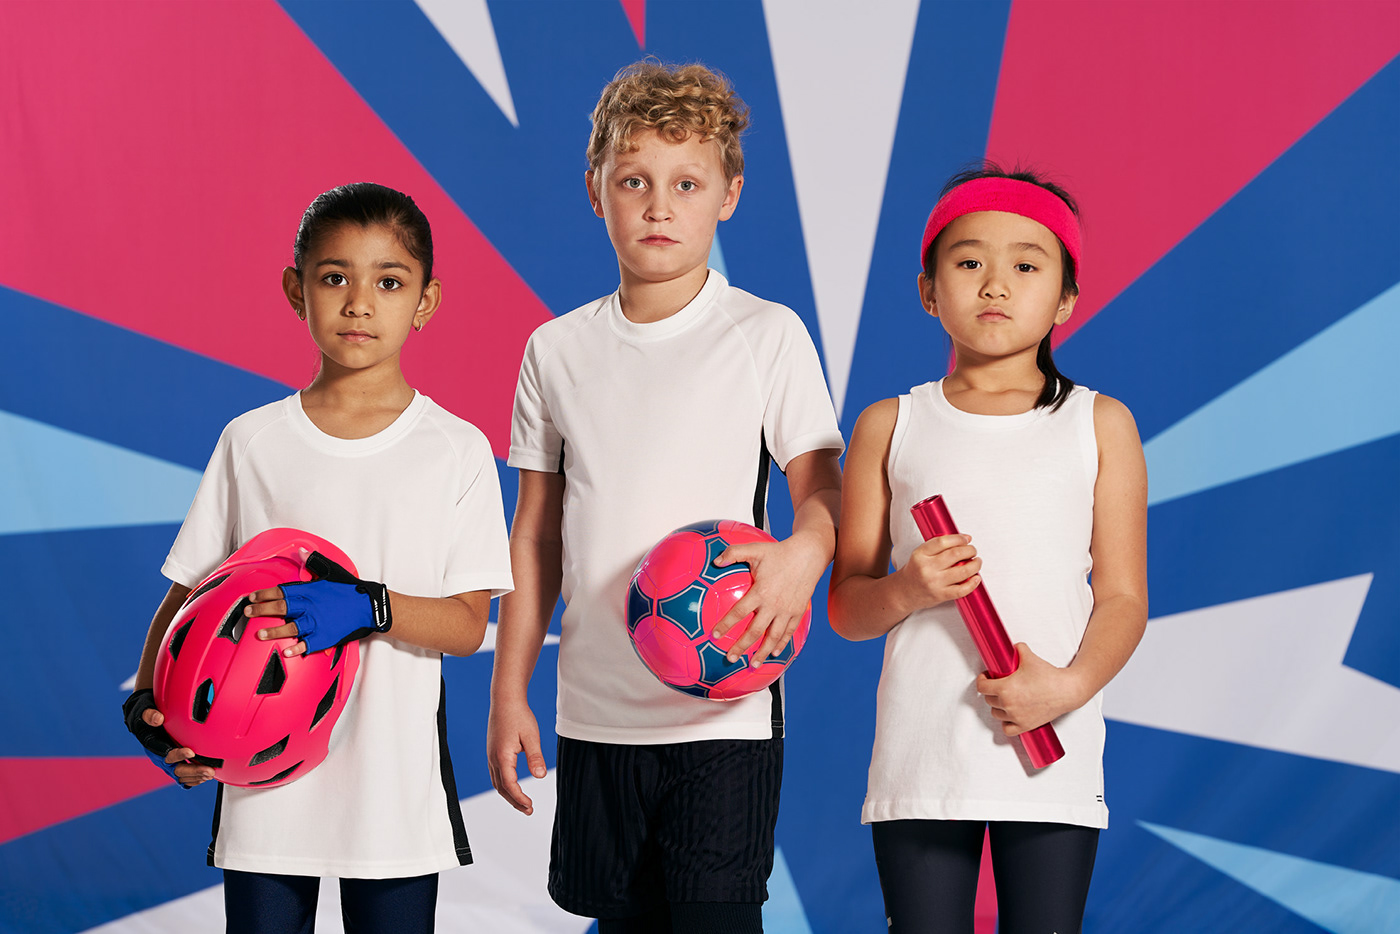 Match kids. Kids Effect. Sportswear Kids. PLAYKIDS Effects. Ourkids.